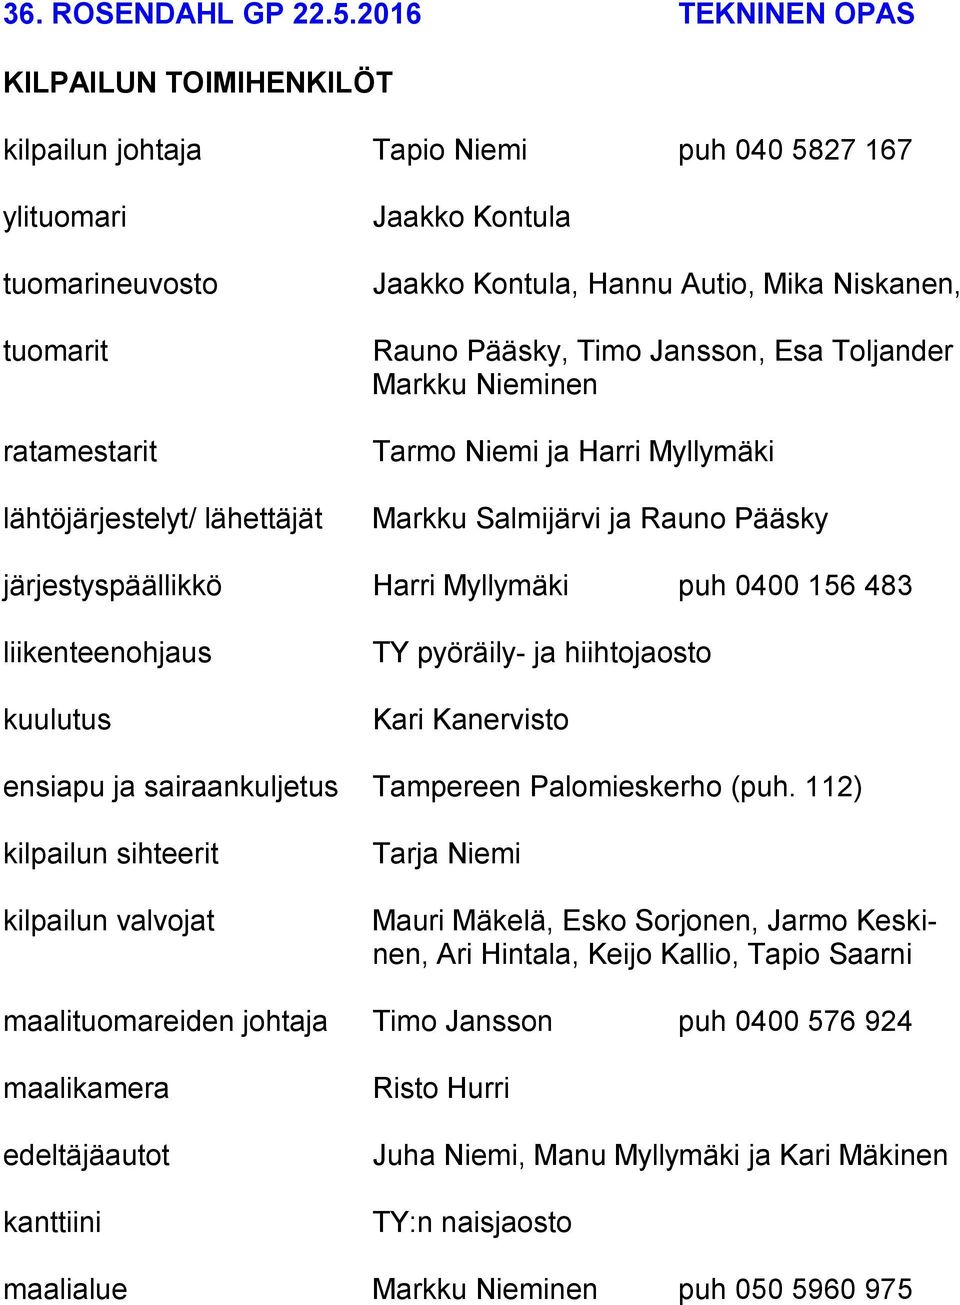 Hannu Autio, Mika Niskanen, Rauno Pääsky, Timo Jansson, Esa Toljander Markku Nieminen Tarmo Niemi ja Harri Myllymäki Markku Salmijärvi ja Rauno Pääsky järjestyspäällikkö Harri Myllymäki puh 0400 156